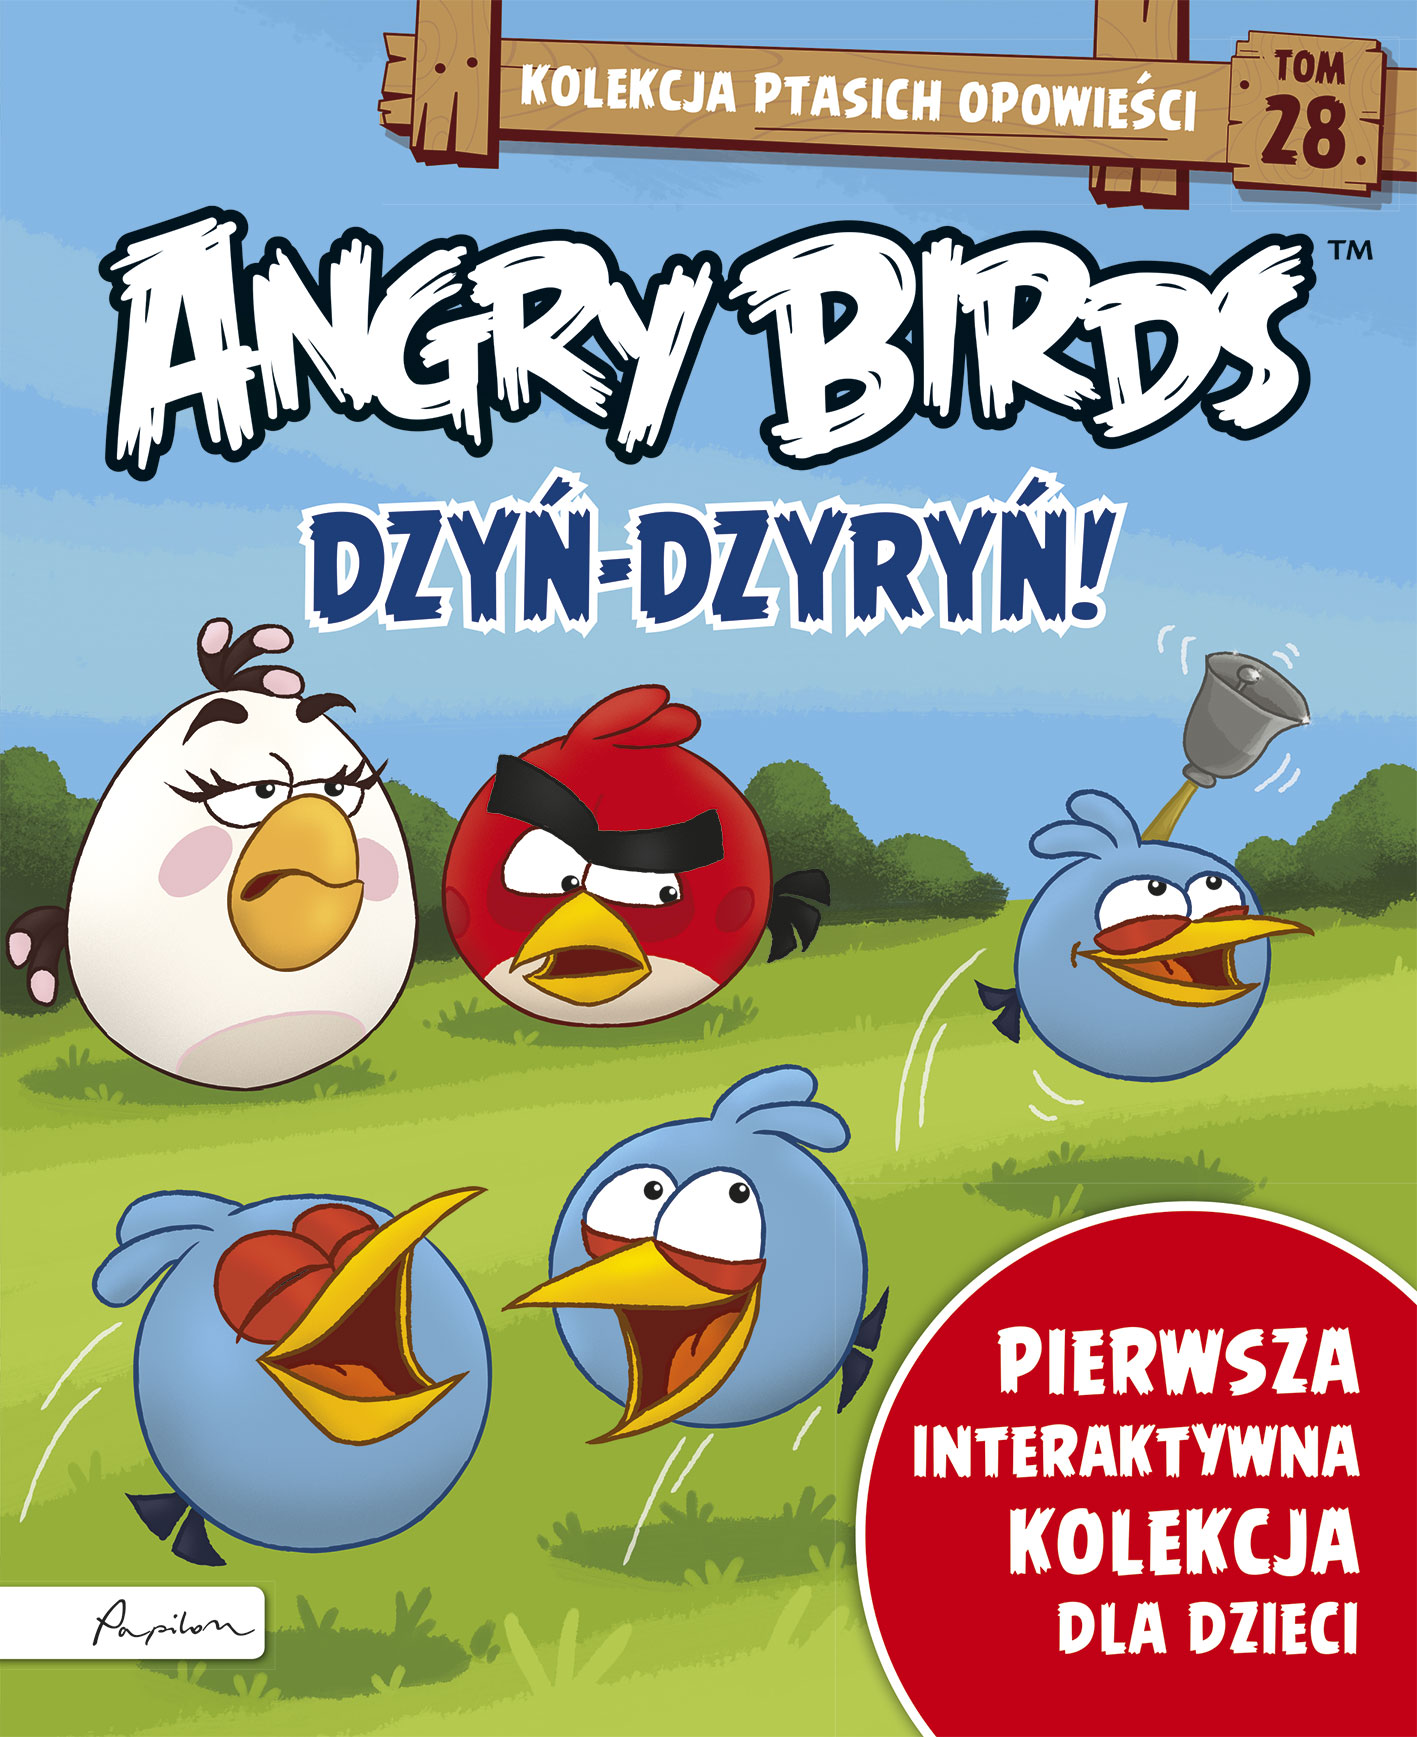 Angry Birds. Kolekcja ptasich opowieści 28. Dzyń-dzyryń!